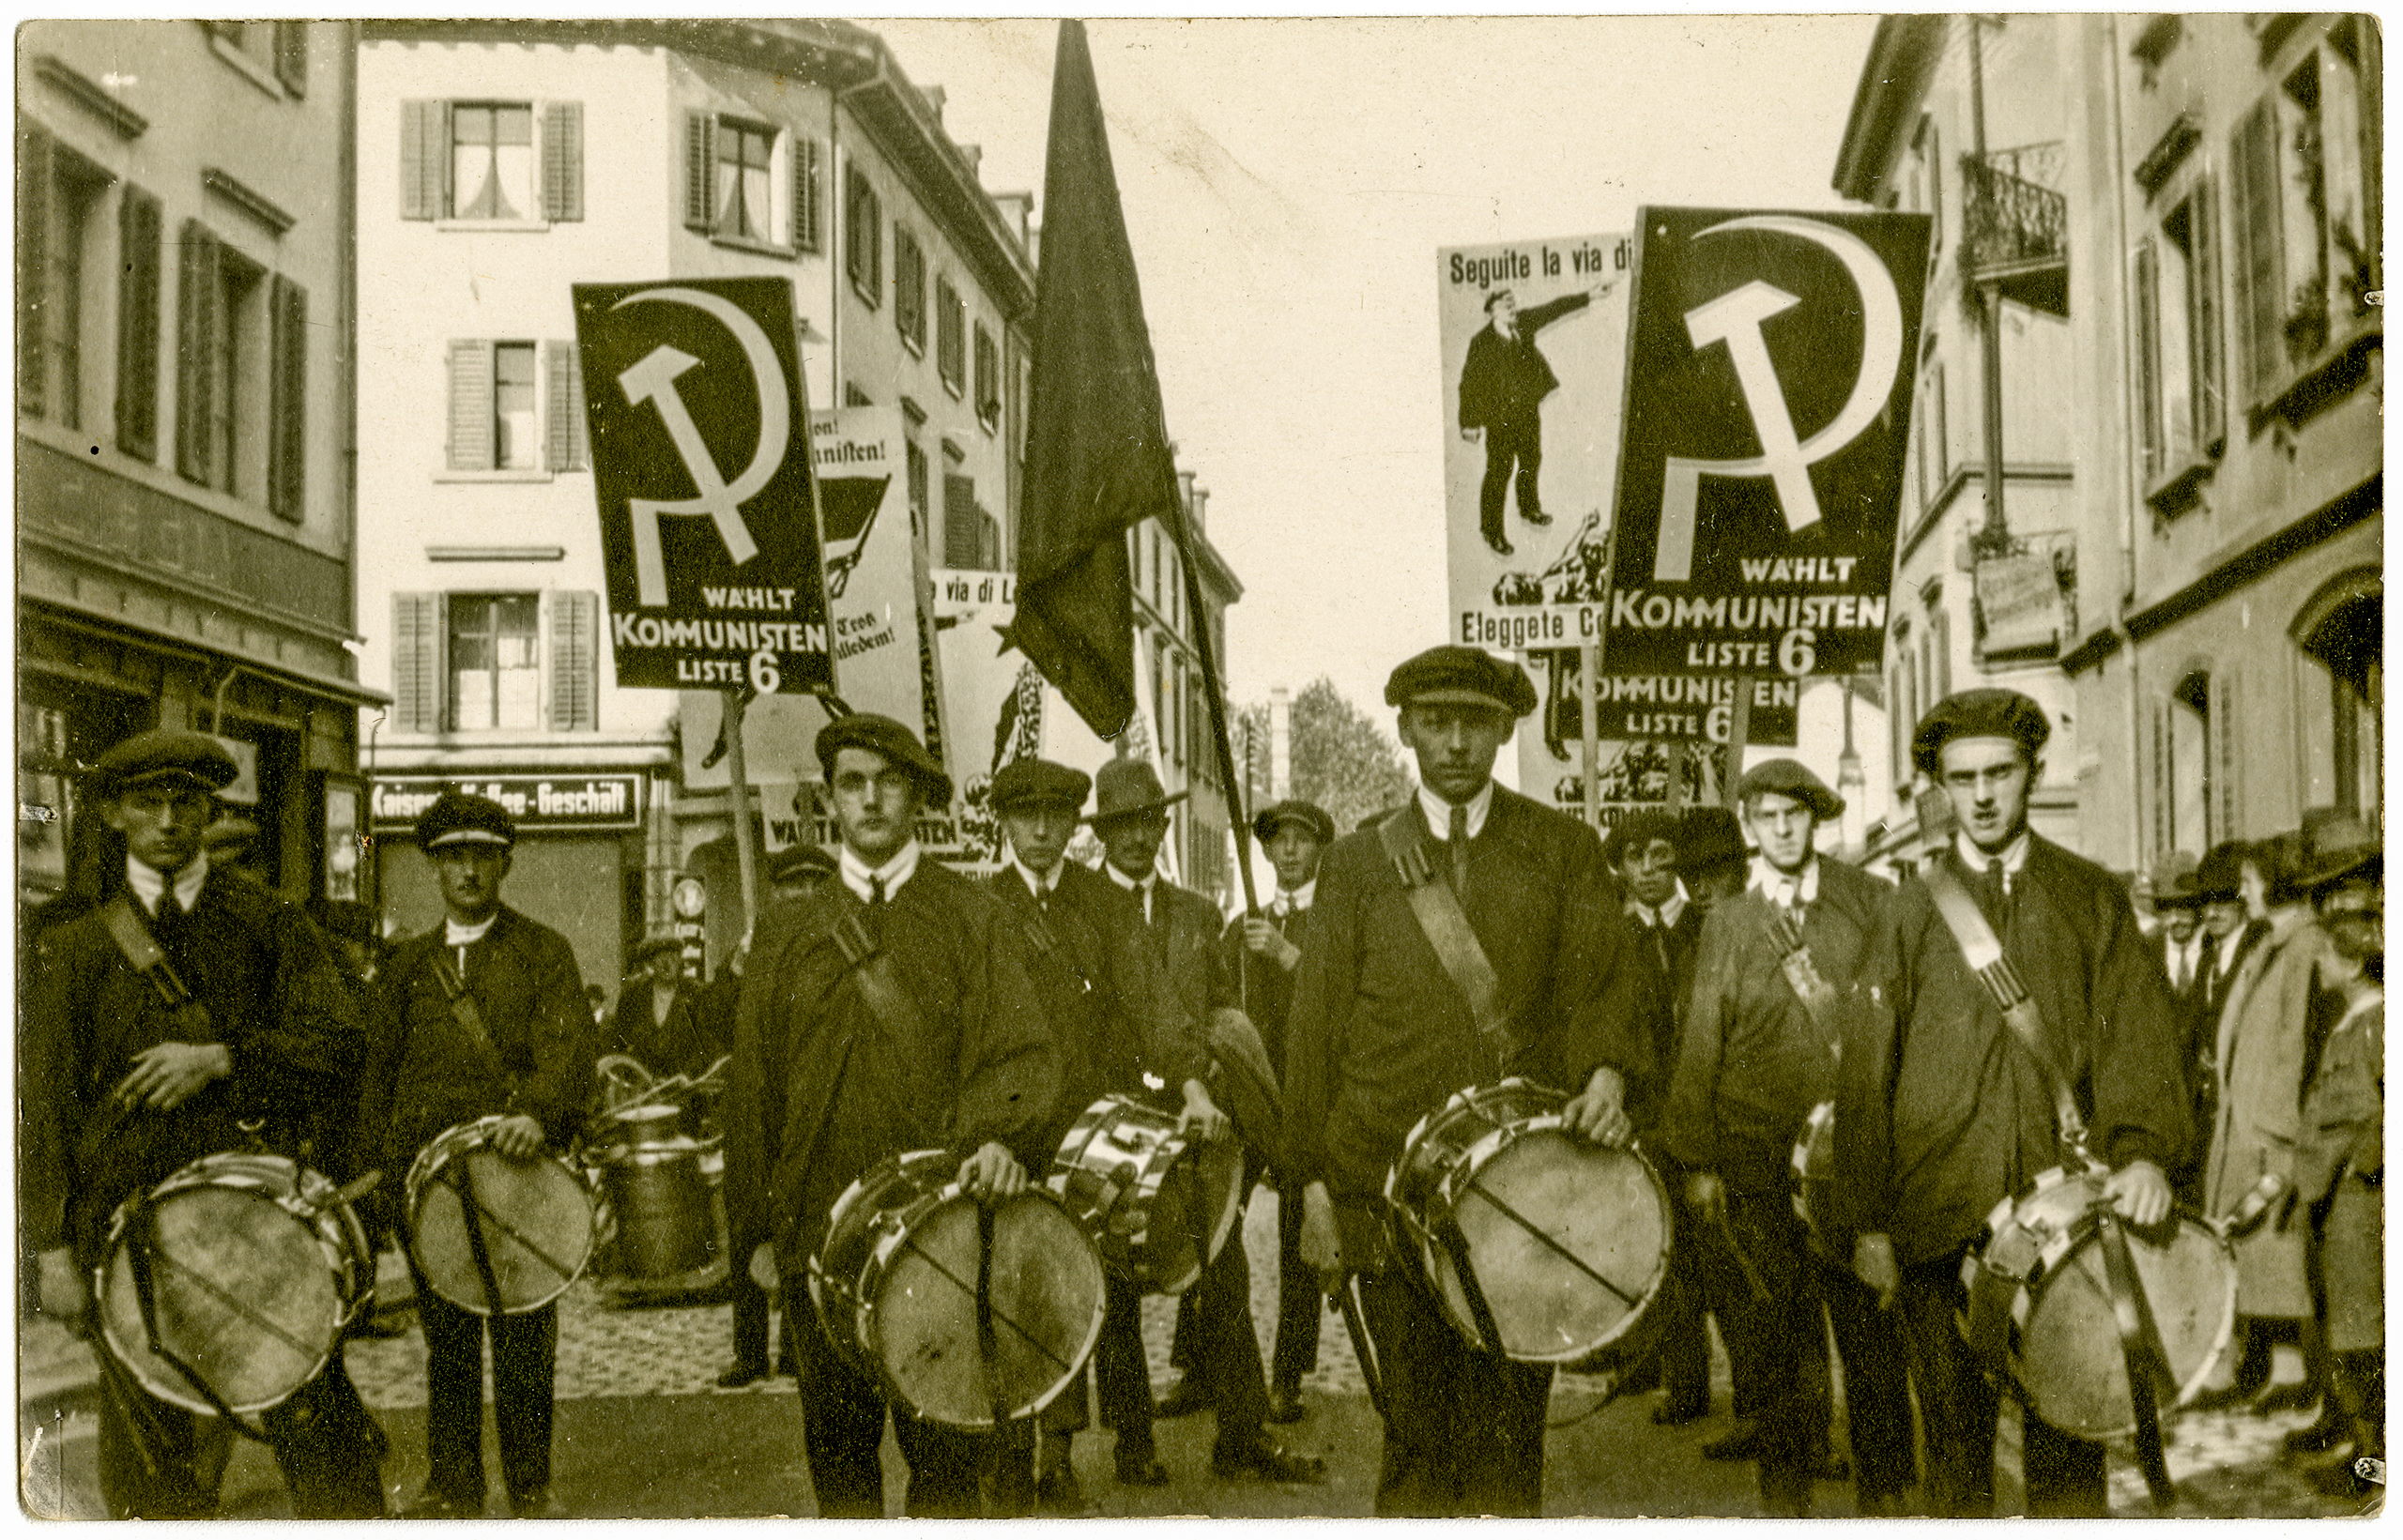 Joueurs de tambour avec des drapeaux communistes.